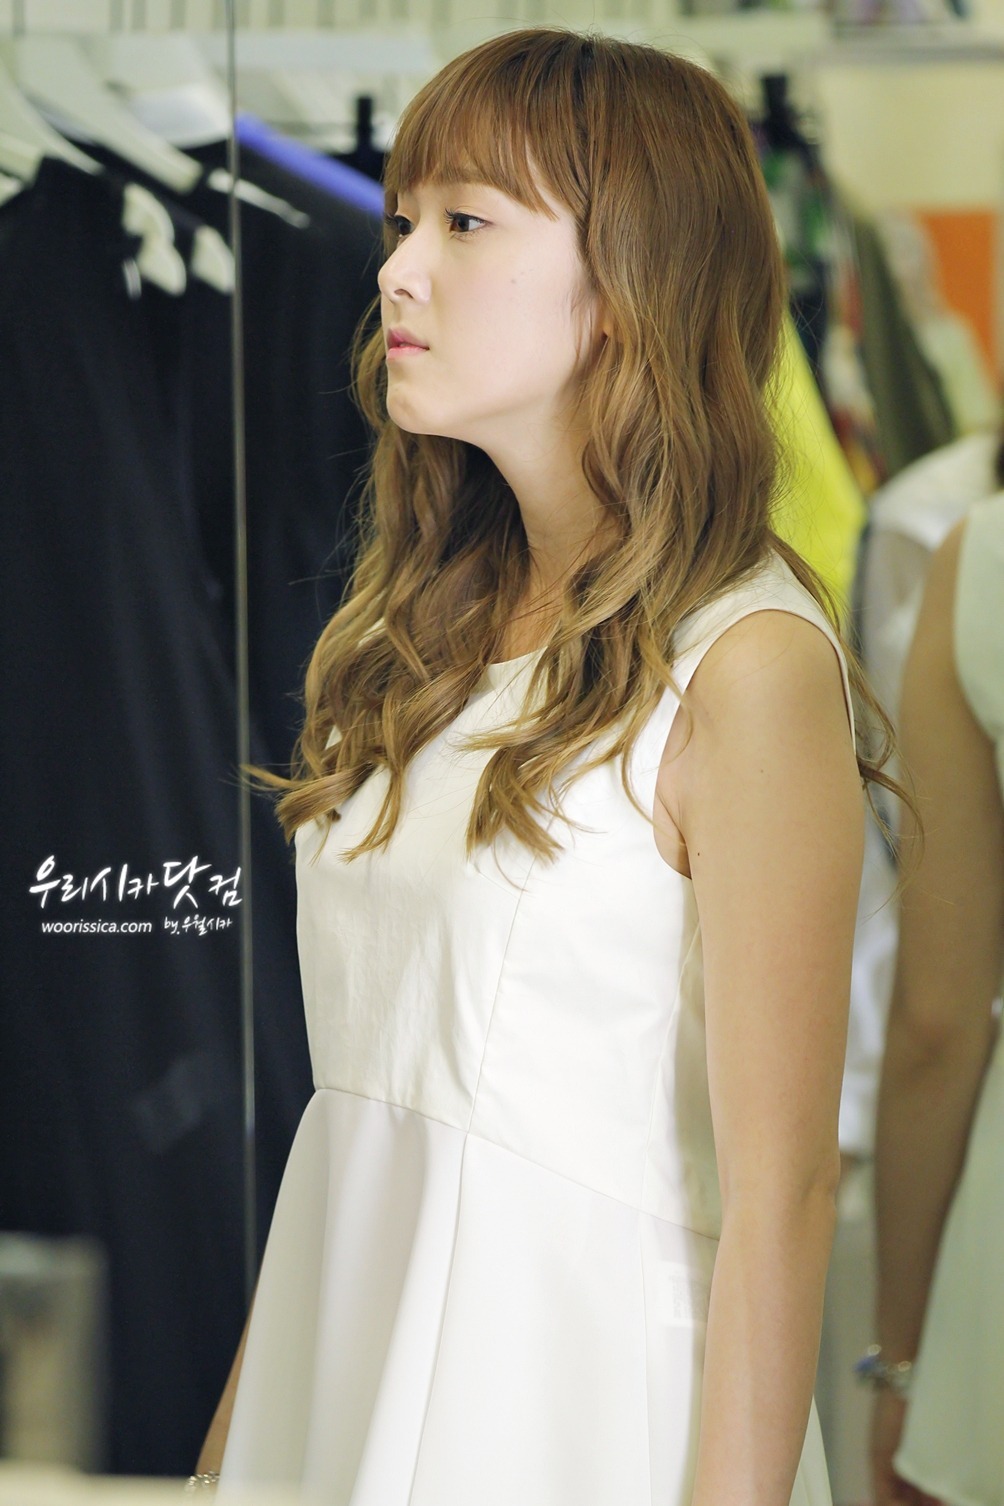 [PIC][15-06-2012]Jessica ghé thăm cửa hàng "COMING STEP" tại Gangnam vào trưa nay - Page 6 Tumblr_m5tomrIOmR1qitdj1o5_r2_1280